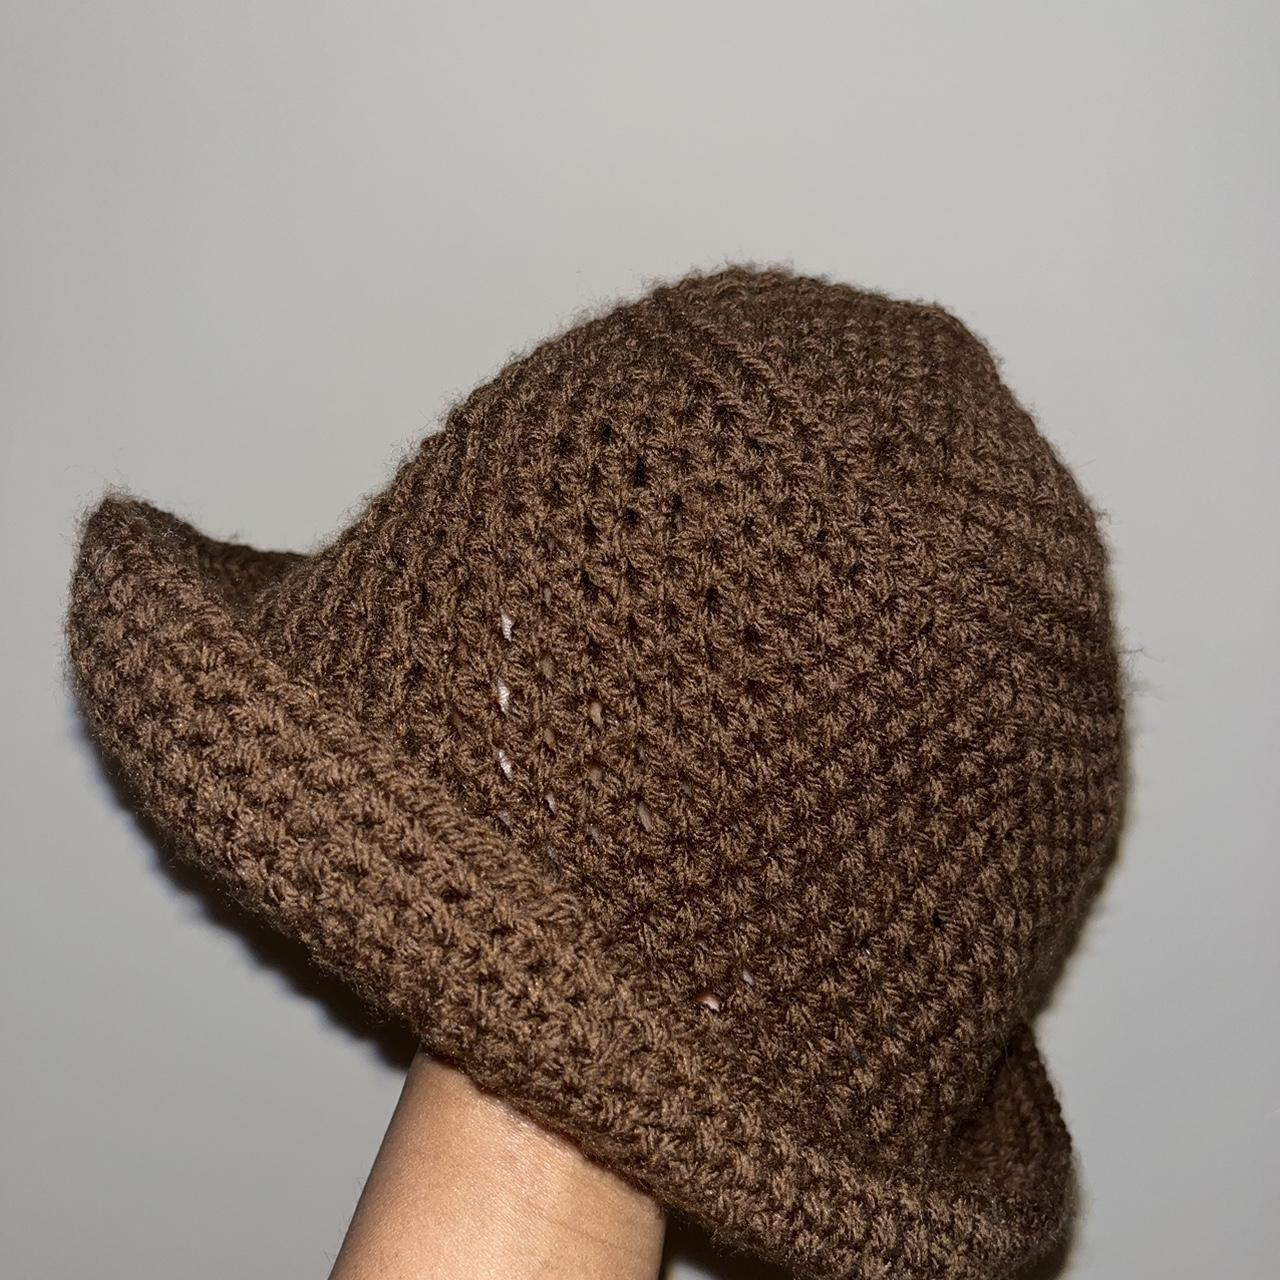 Handmade Crochet Bucket Hat Contact for... - Depop